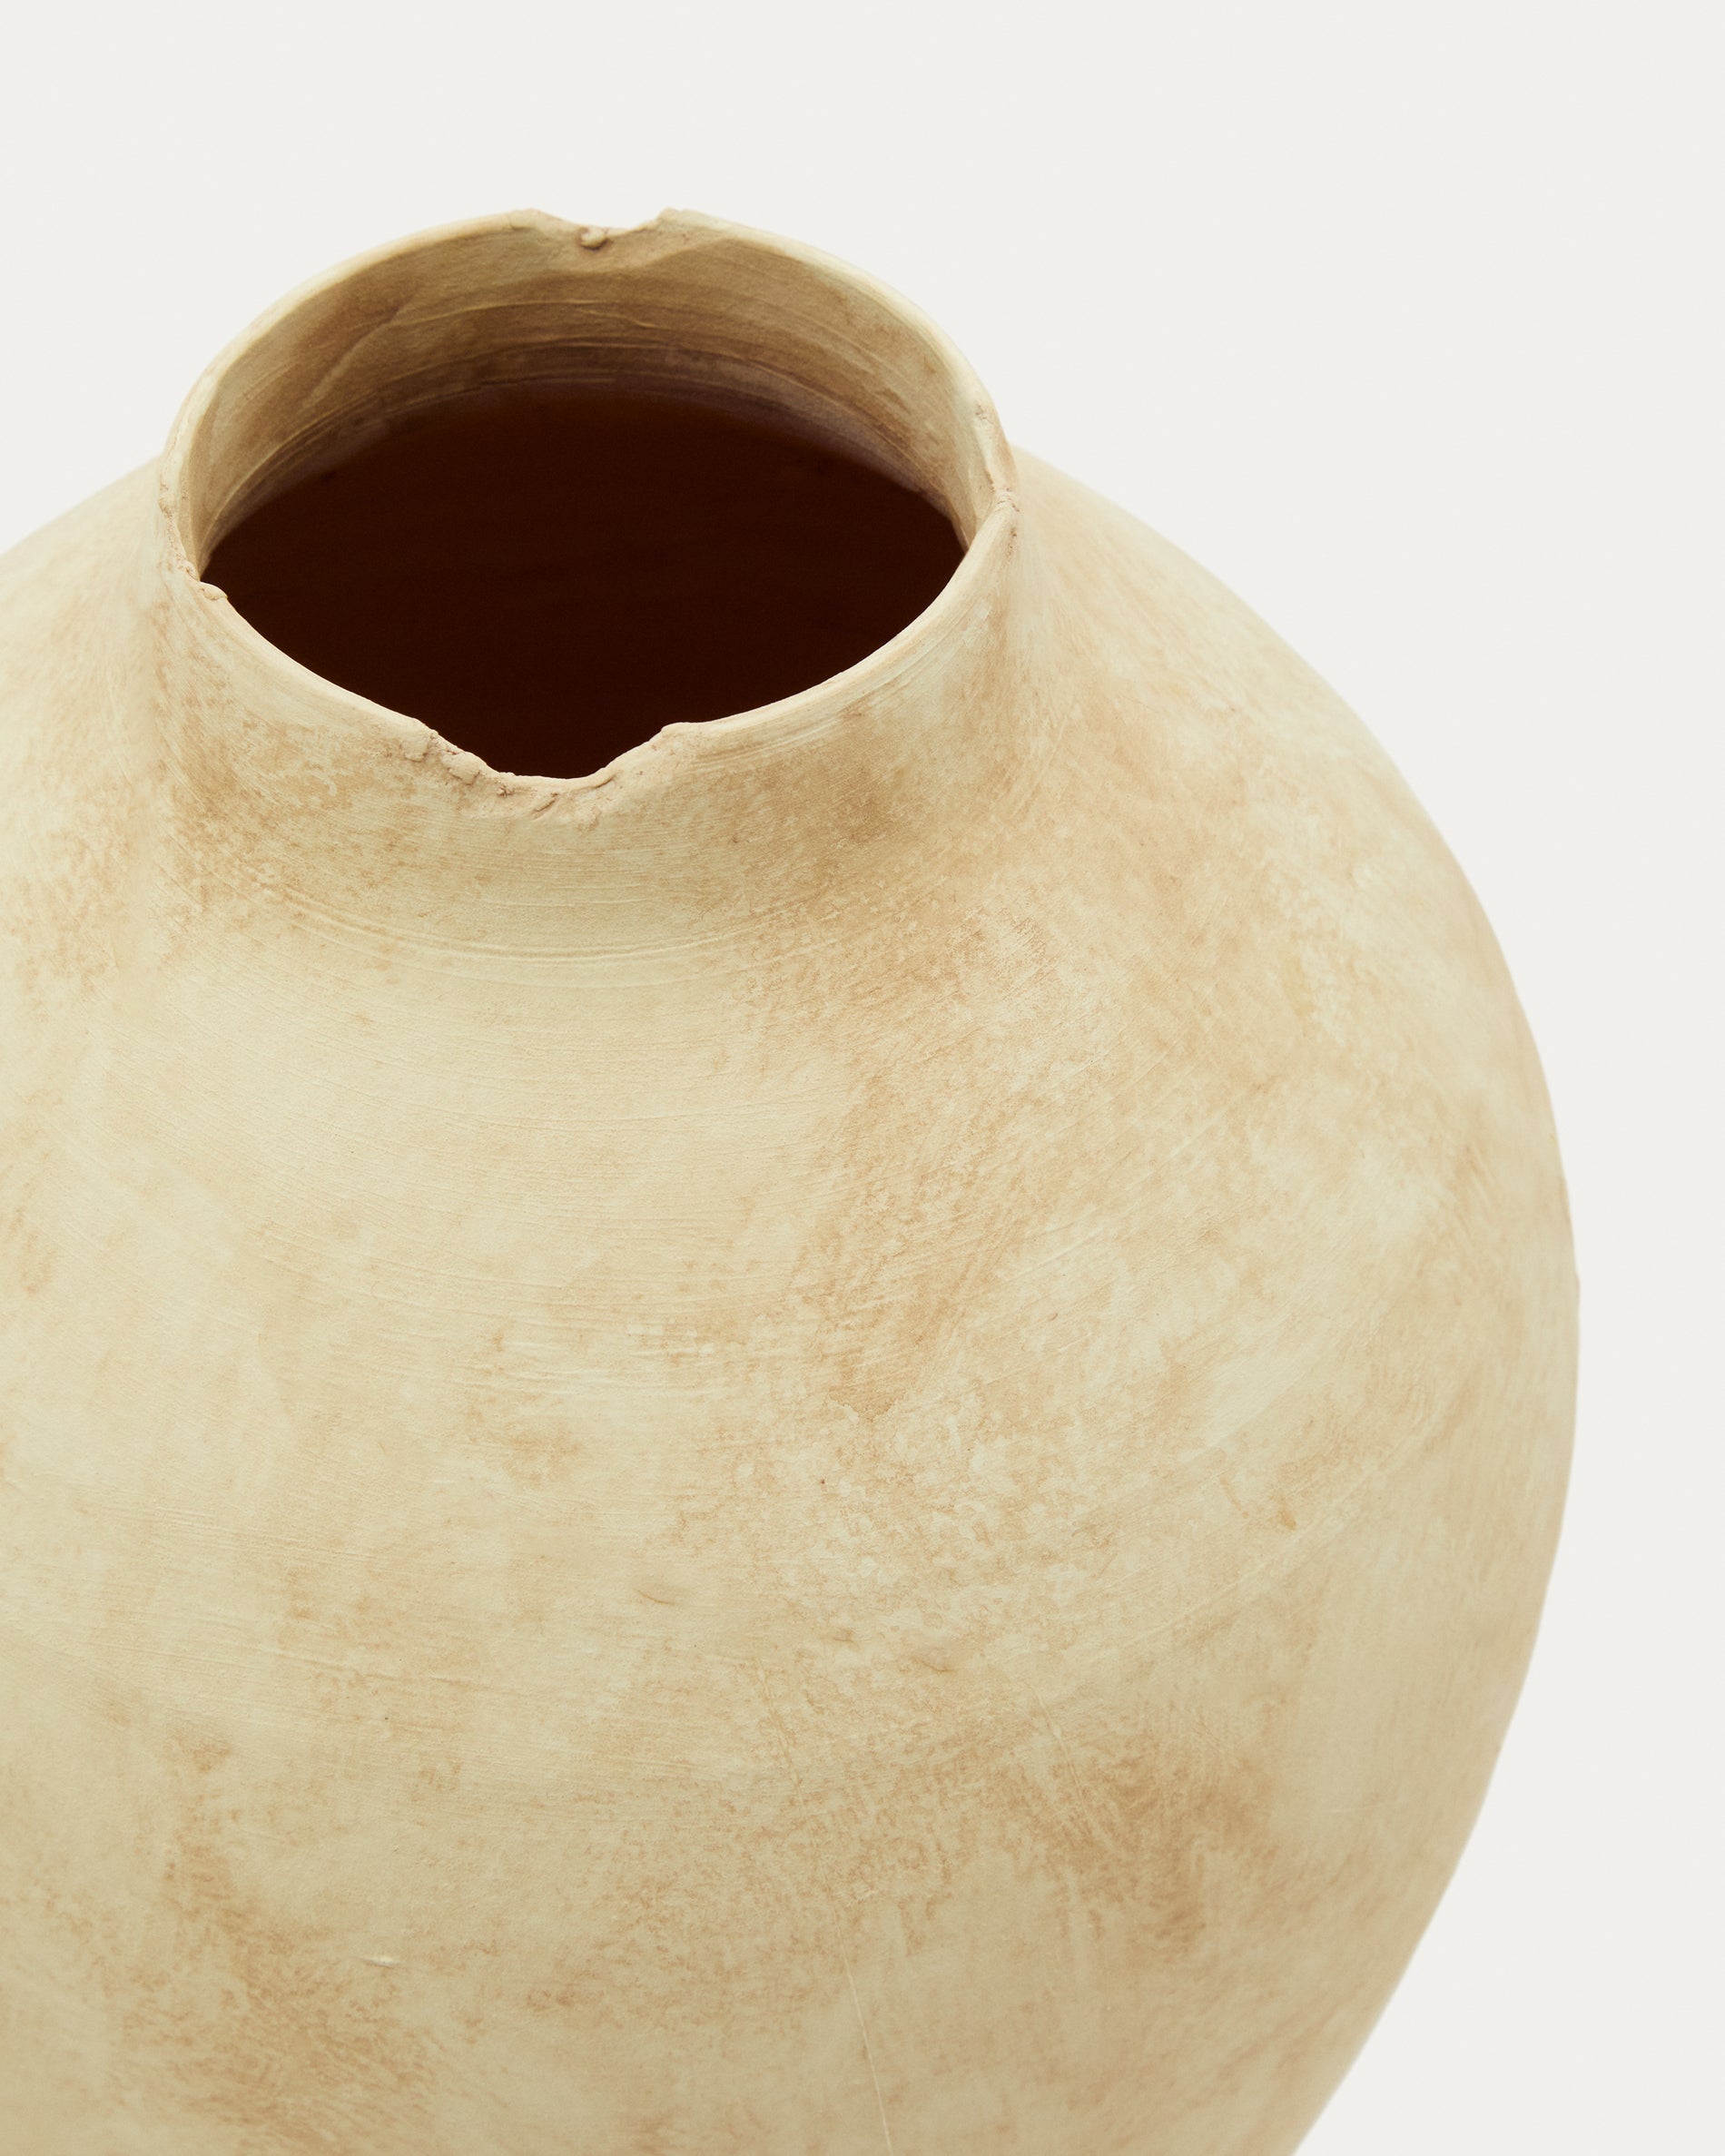 Silbet beige ceramic vase, 23 cm